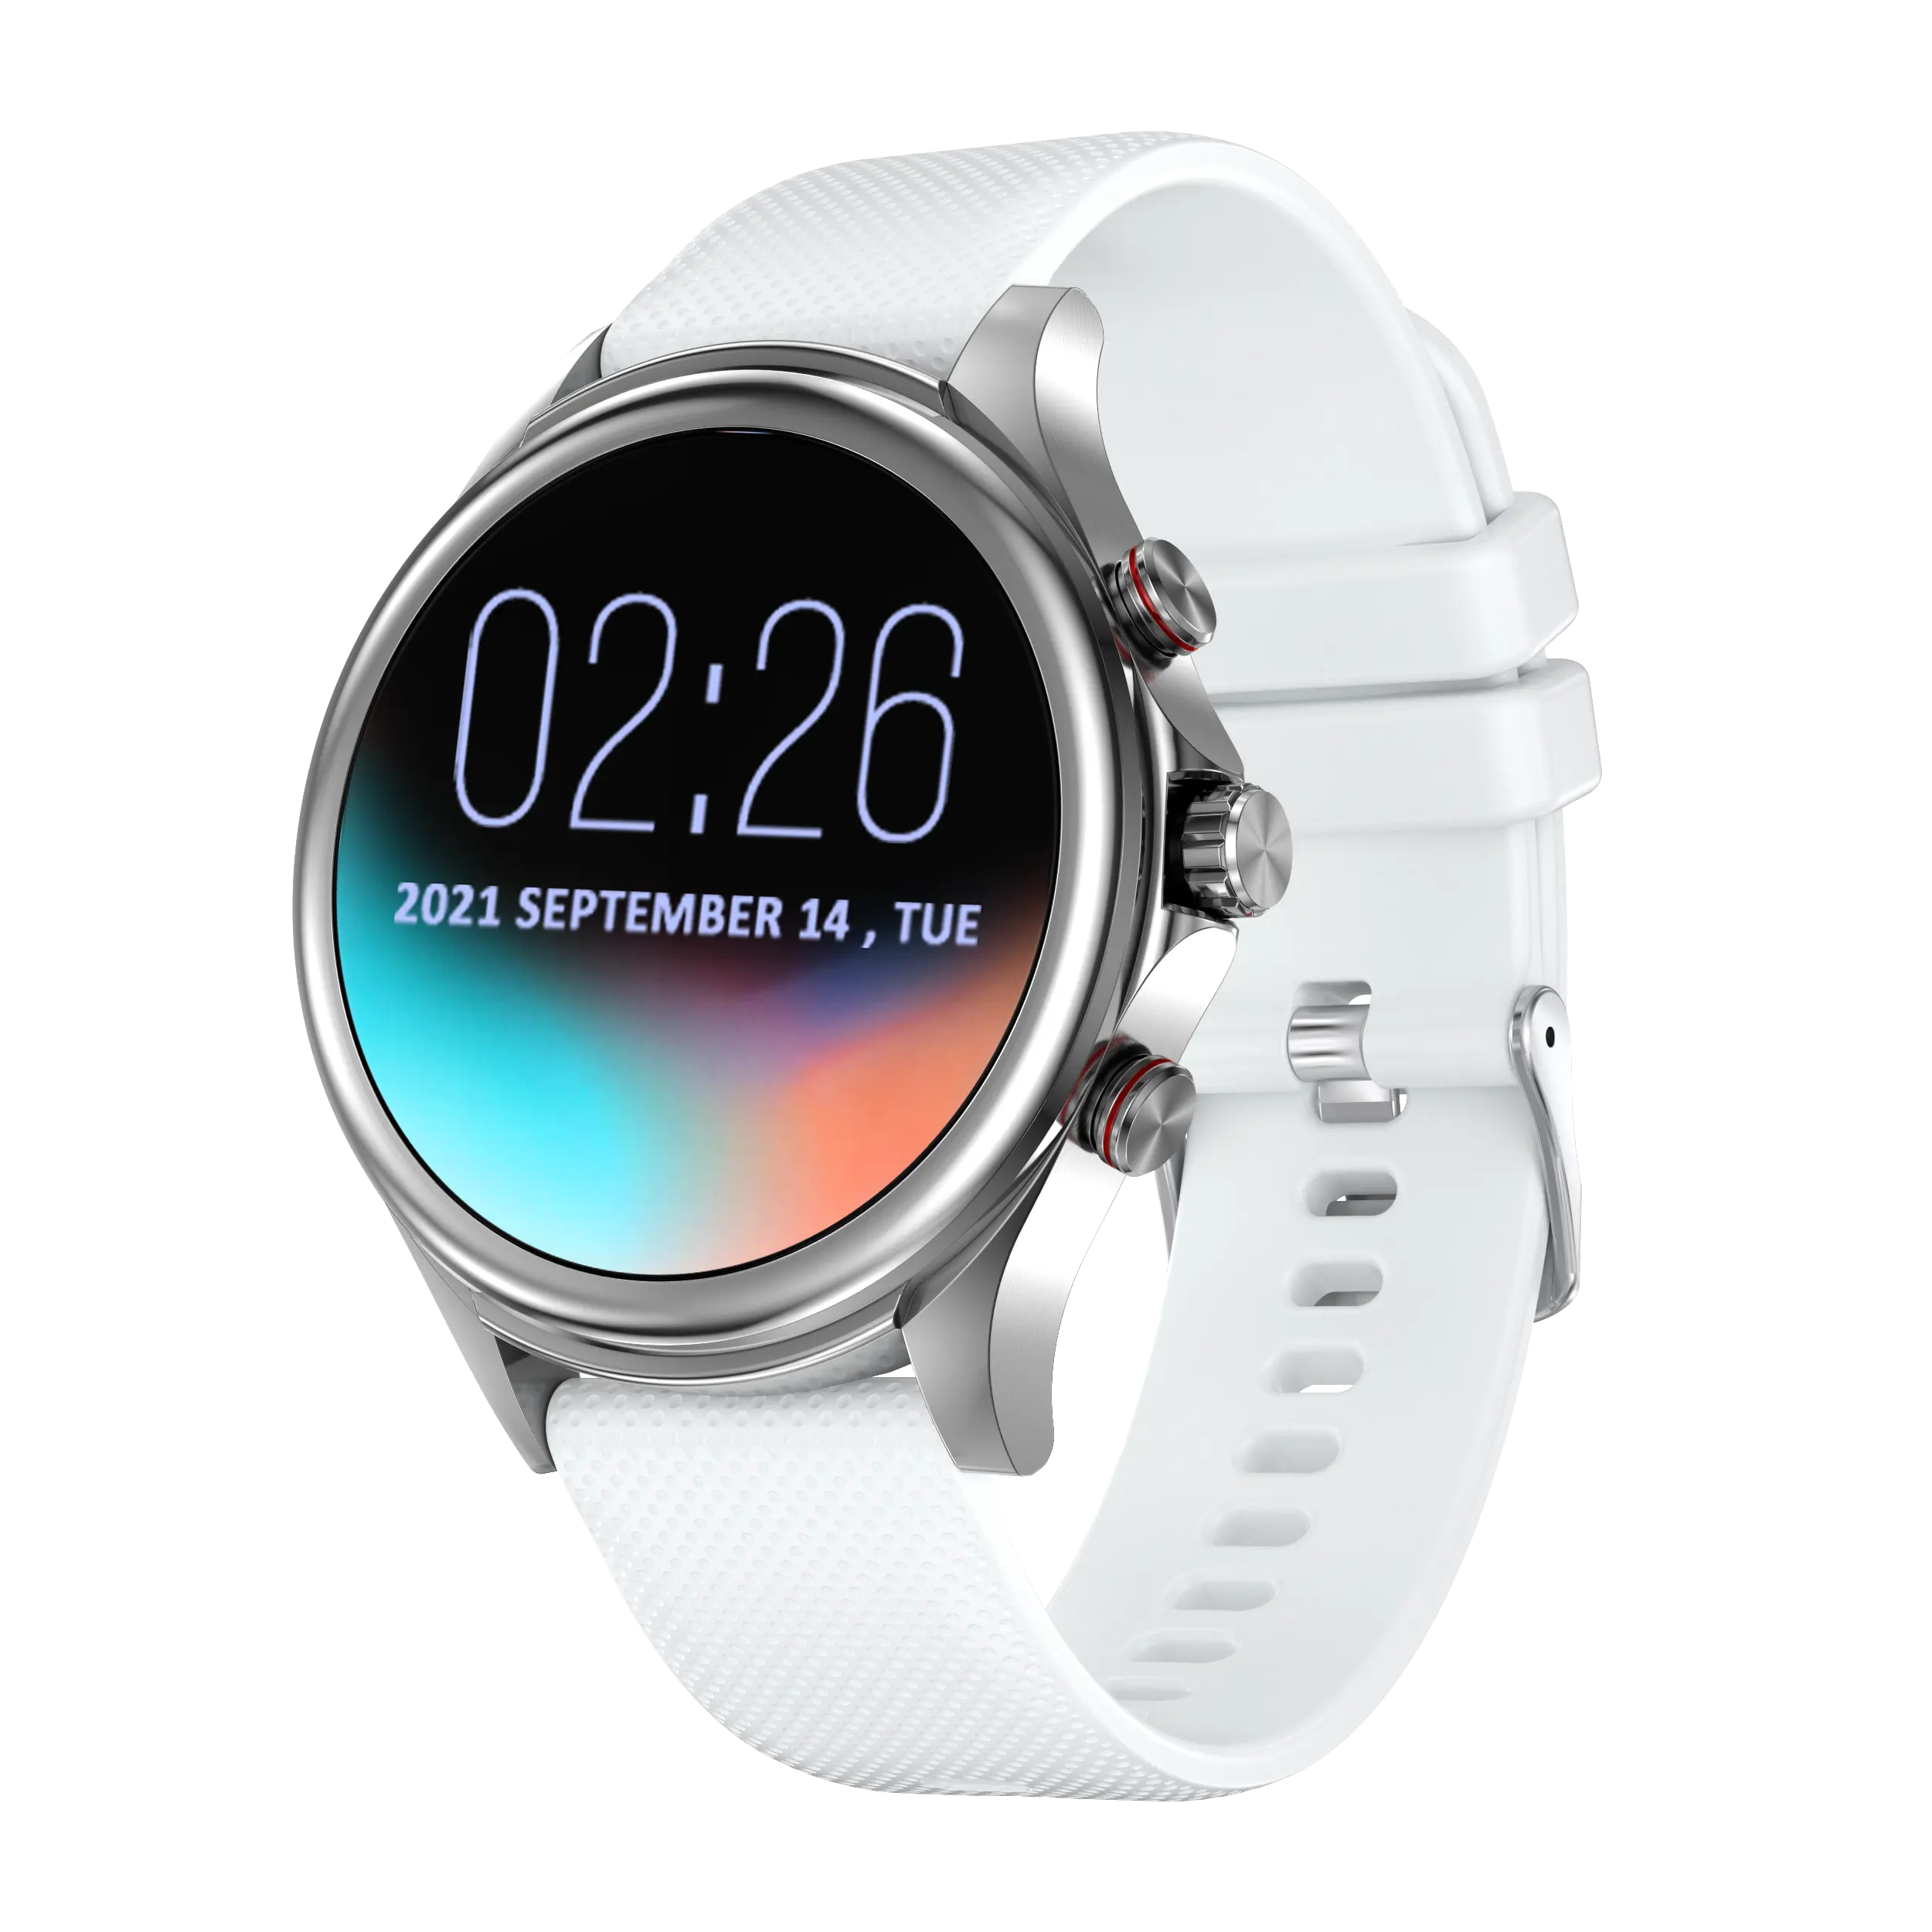 새로운 MW-ONE 스마트 시계 웨어러블 기기 여러 스포츠 초박형 디자인 패션 시계 SMS 알림 듣기 속도 모니터링 시계